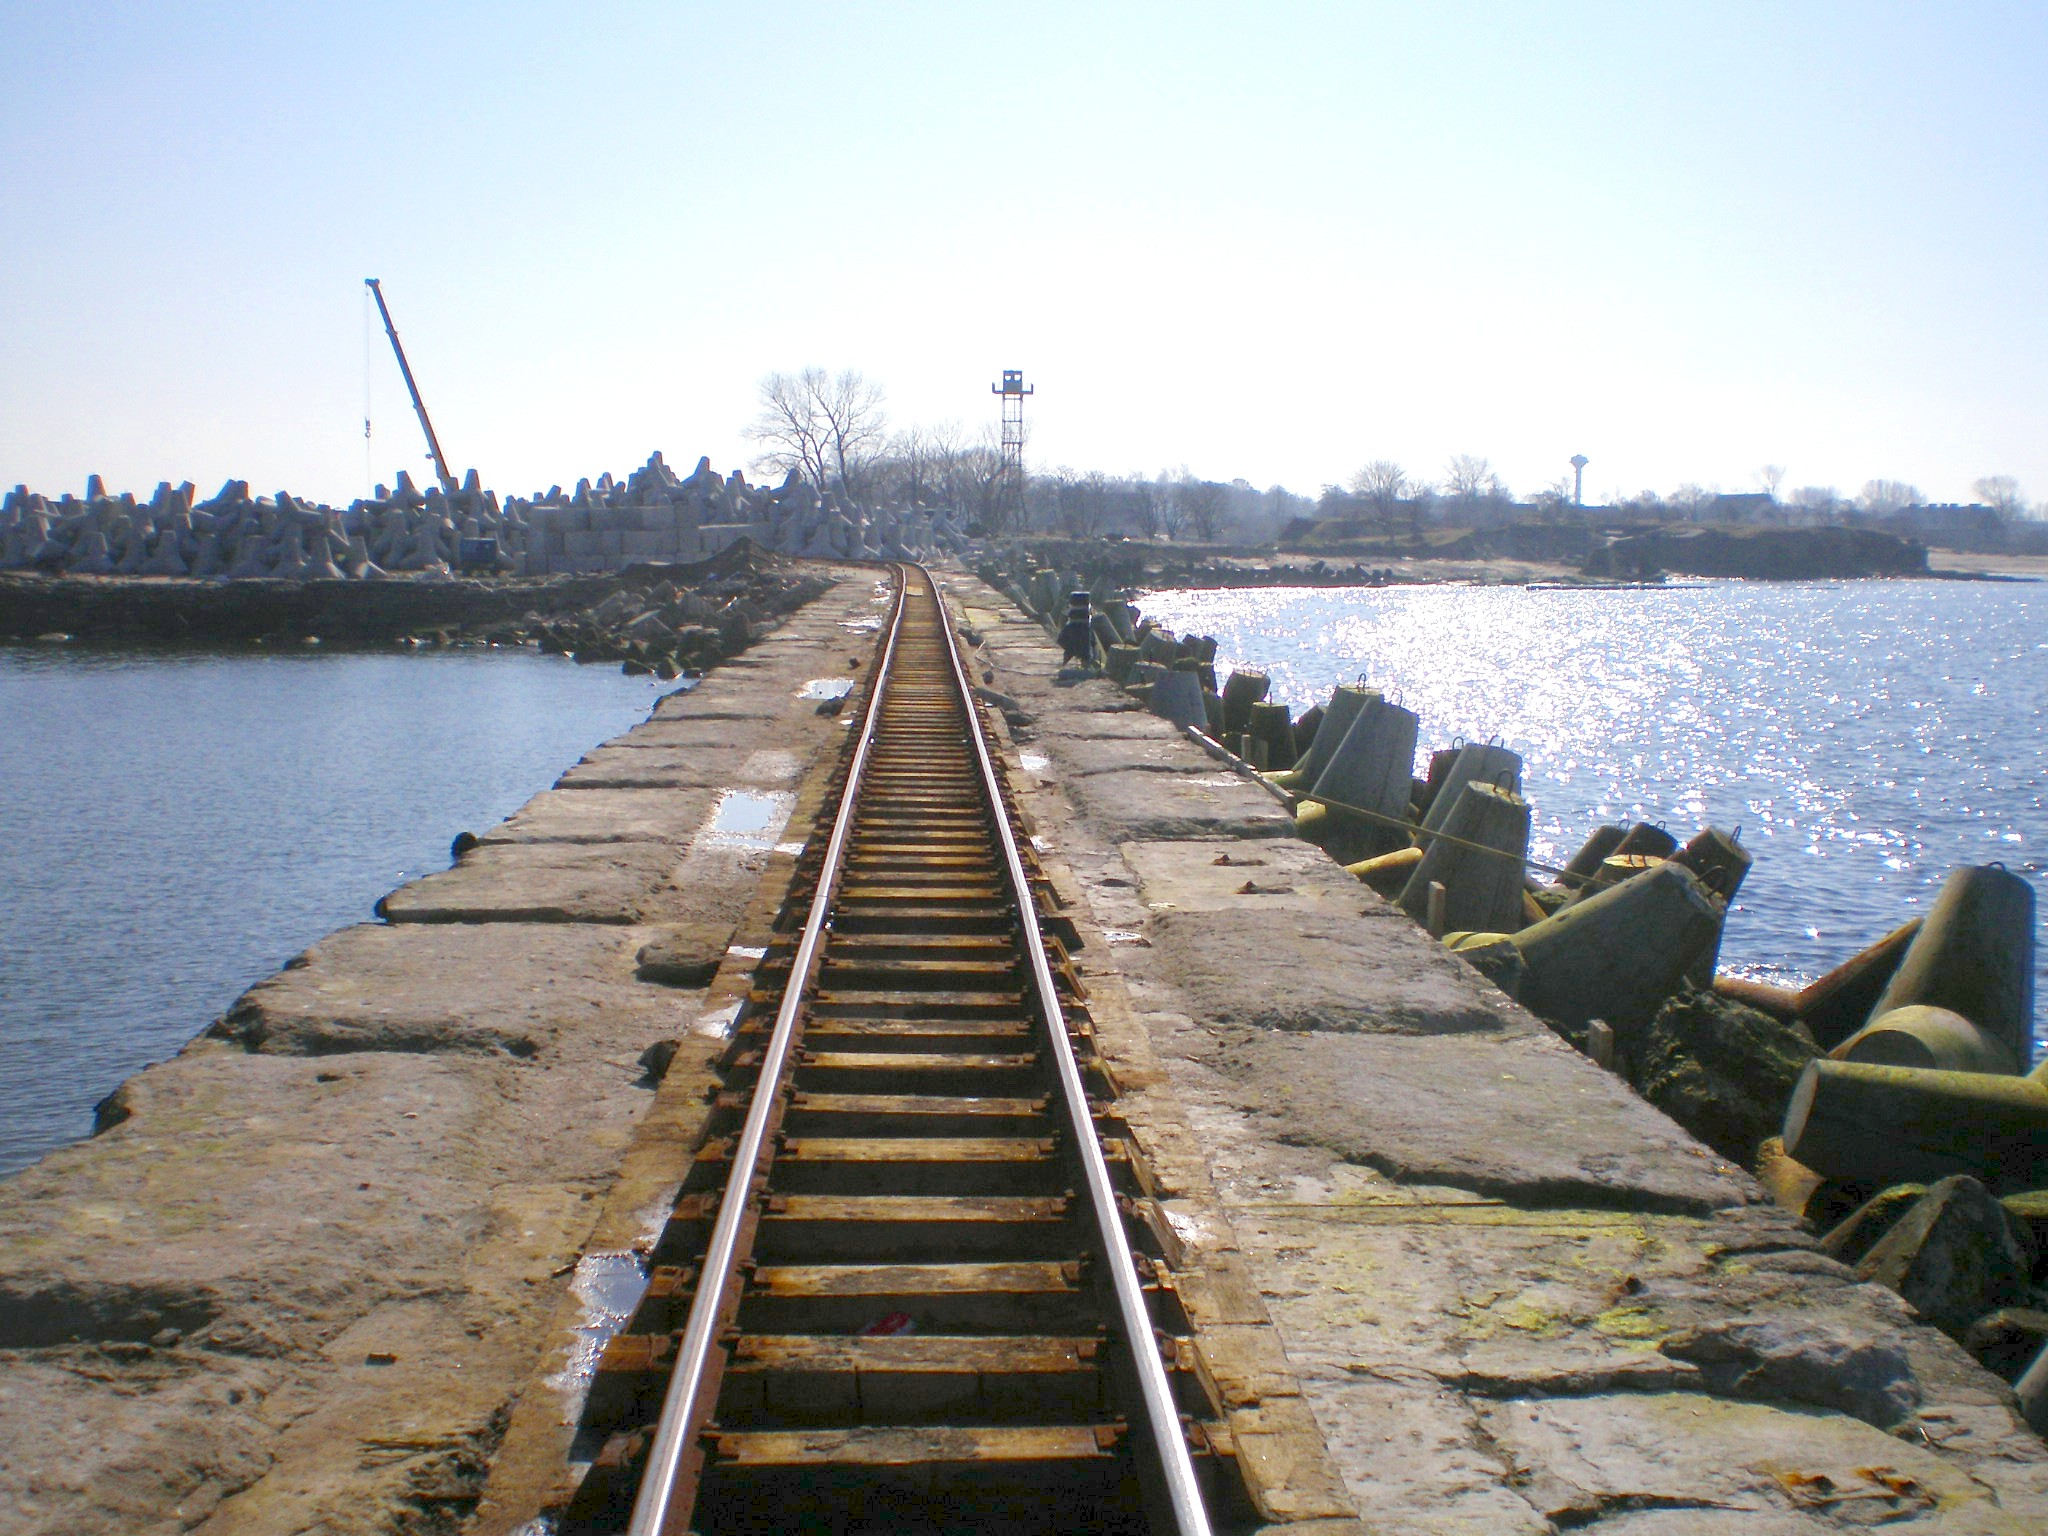 Узкоколейная железная дорога на территории Южного мола (Балтийская коса)  — фотографии, сделанные в 2008 году (часть 3)